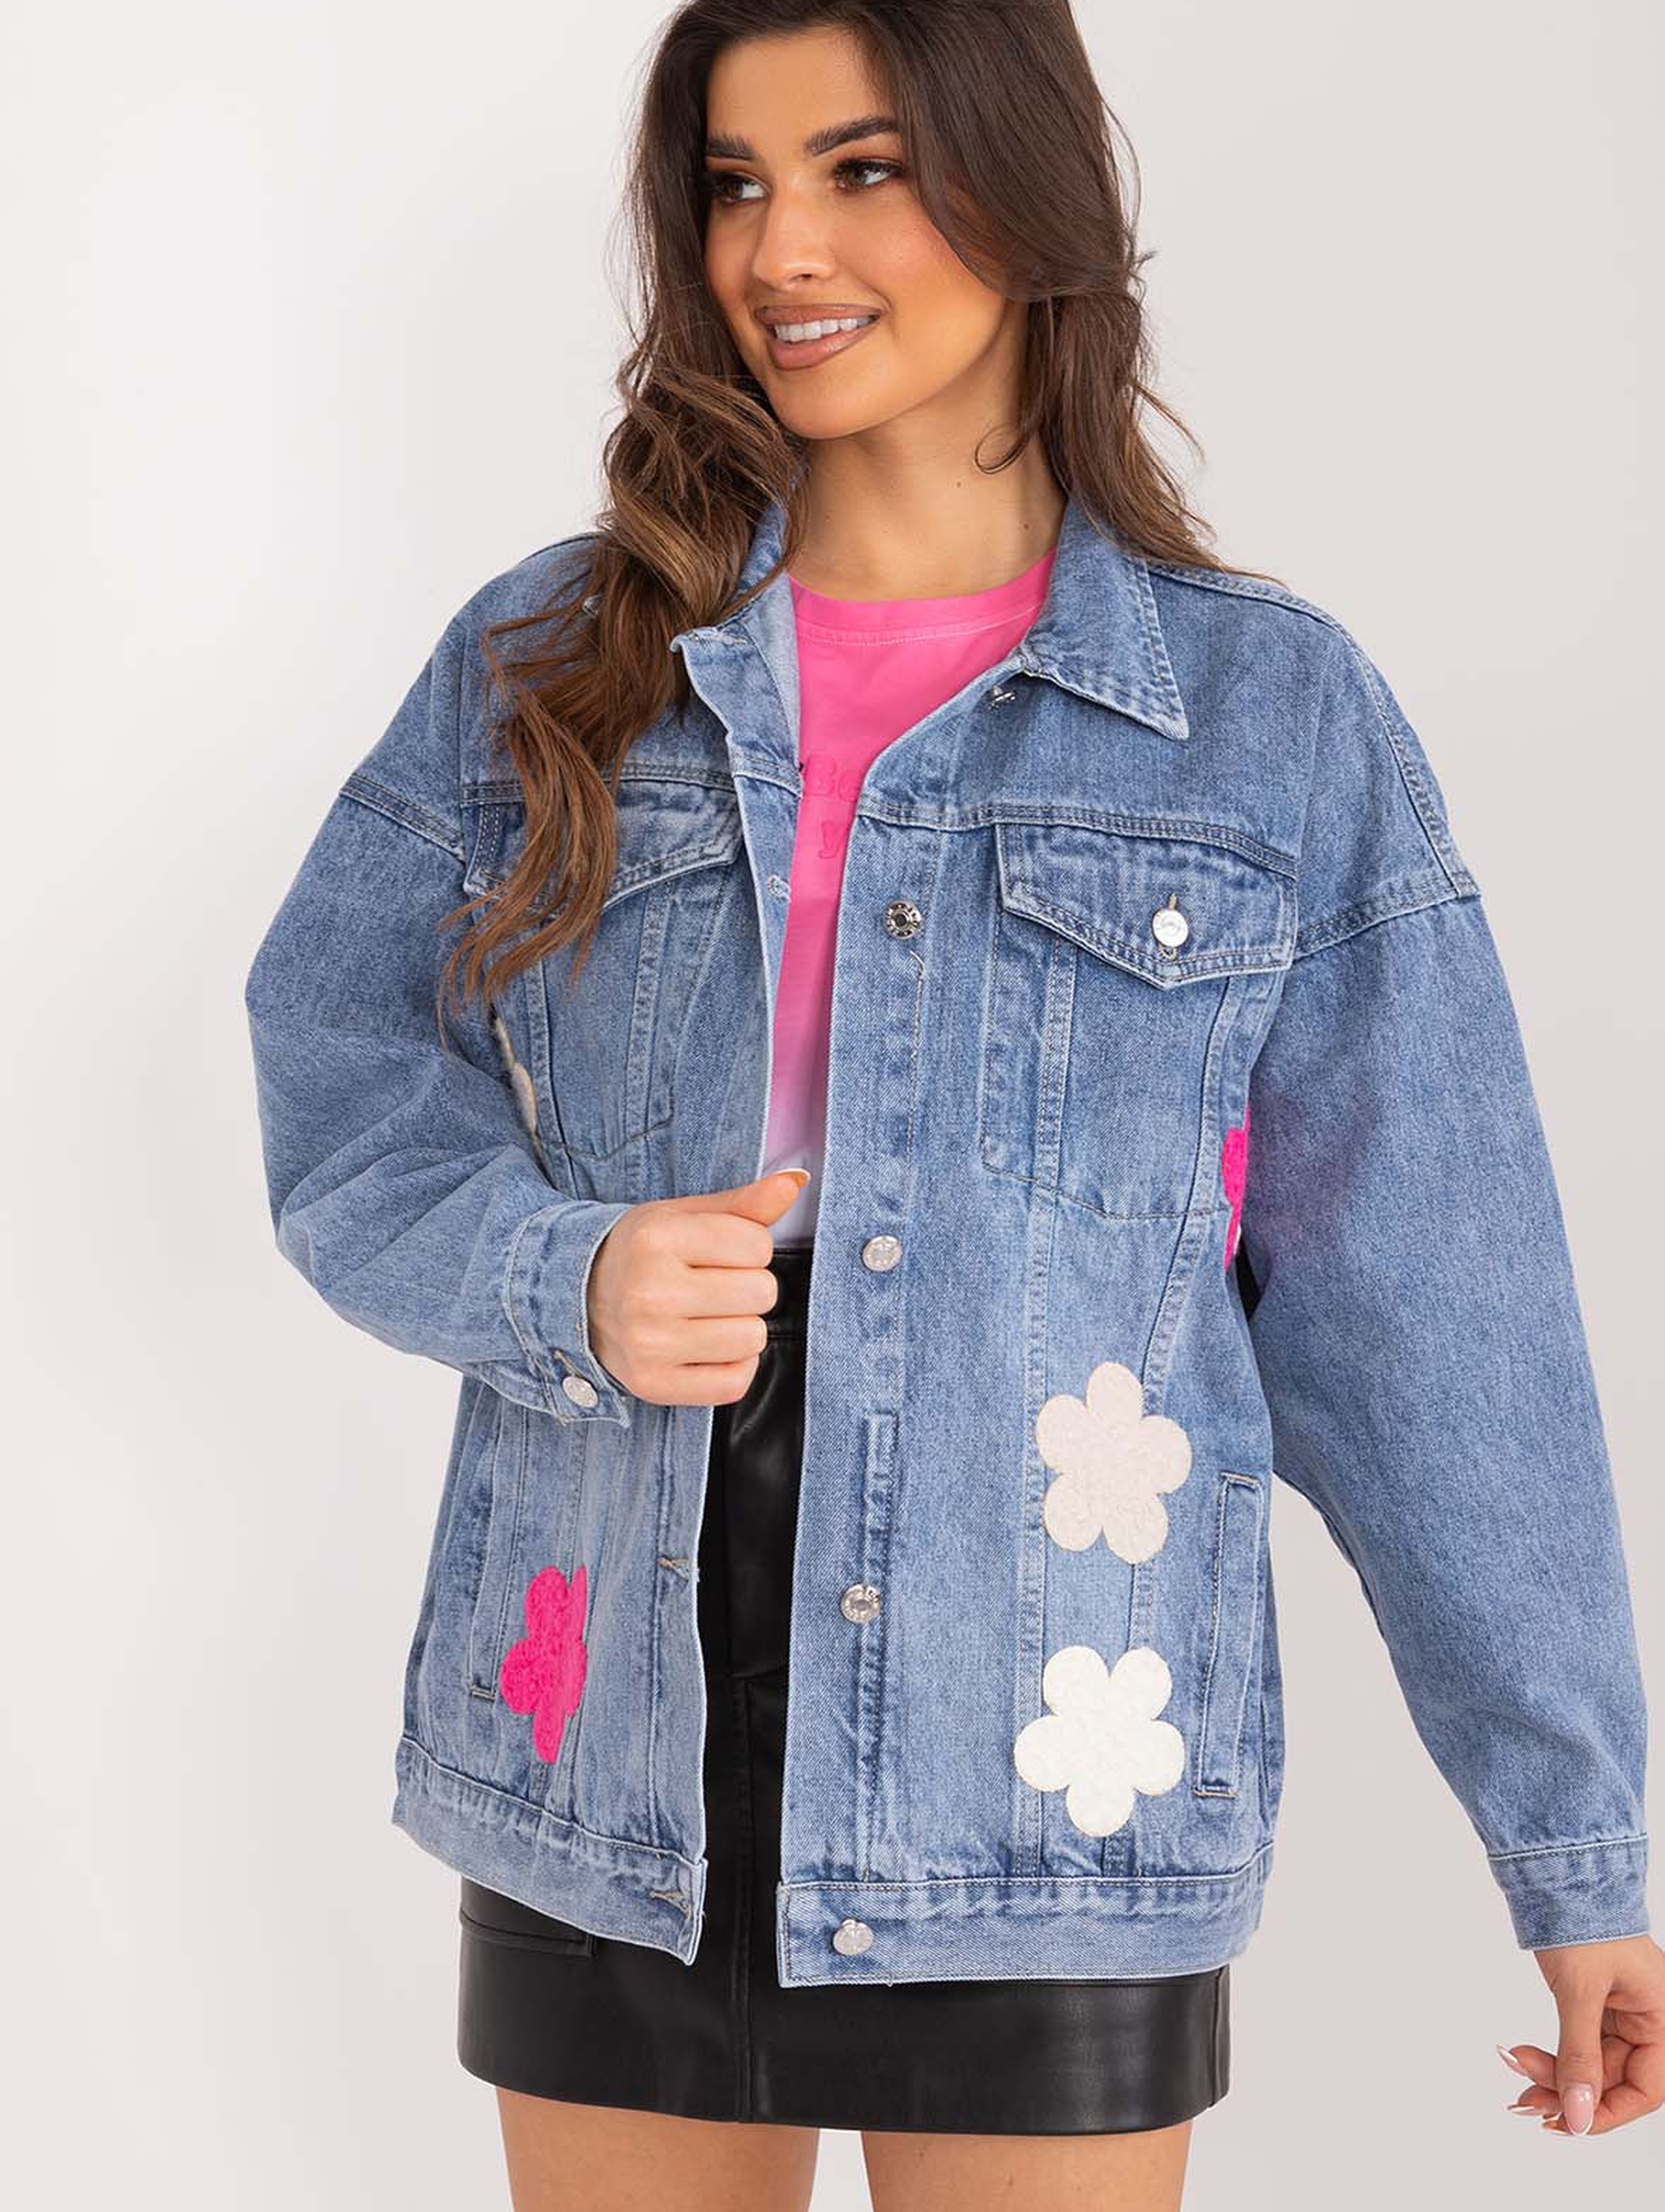 Damska kurtka jasnoniebieska jeansowa w kwiaty